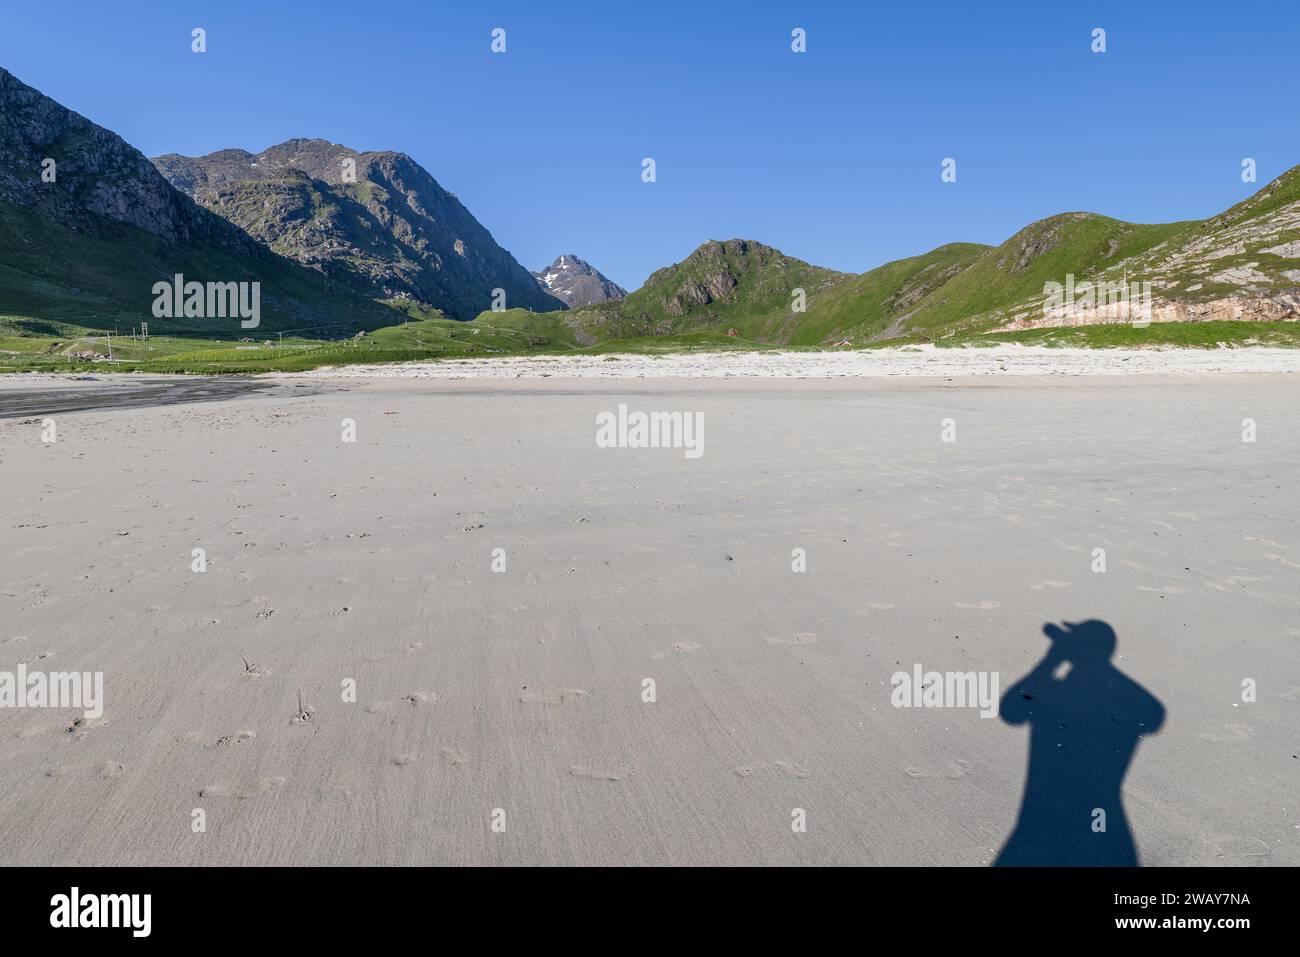 Une ombre du photographe s'étend sur le sable lisse de Haukland Beach, Lofoten, Norvège, avec des montagnes escarpées sous un ciel dégagé Banque D'Images